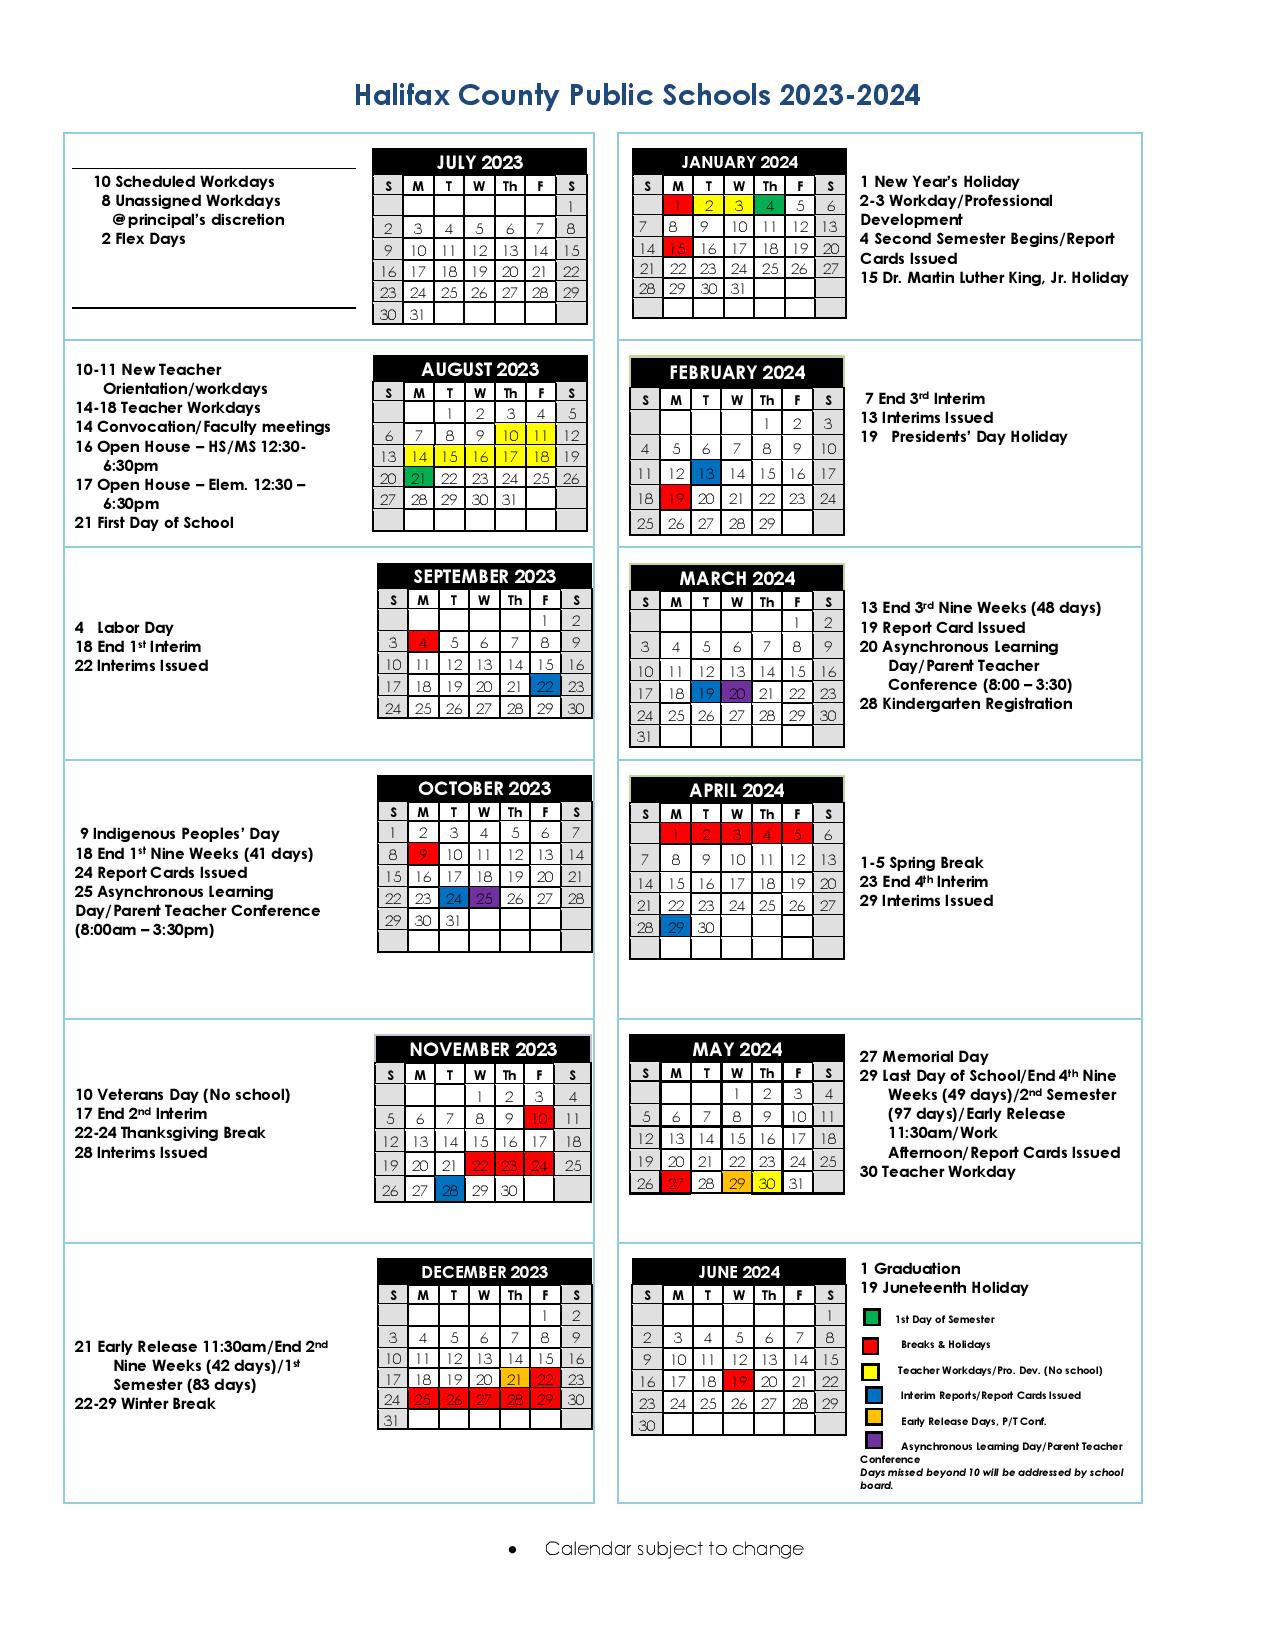 Halifax County Public Schools Calendar 20242025 in PDF